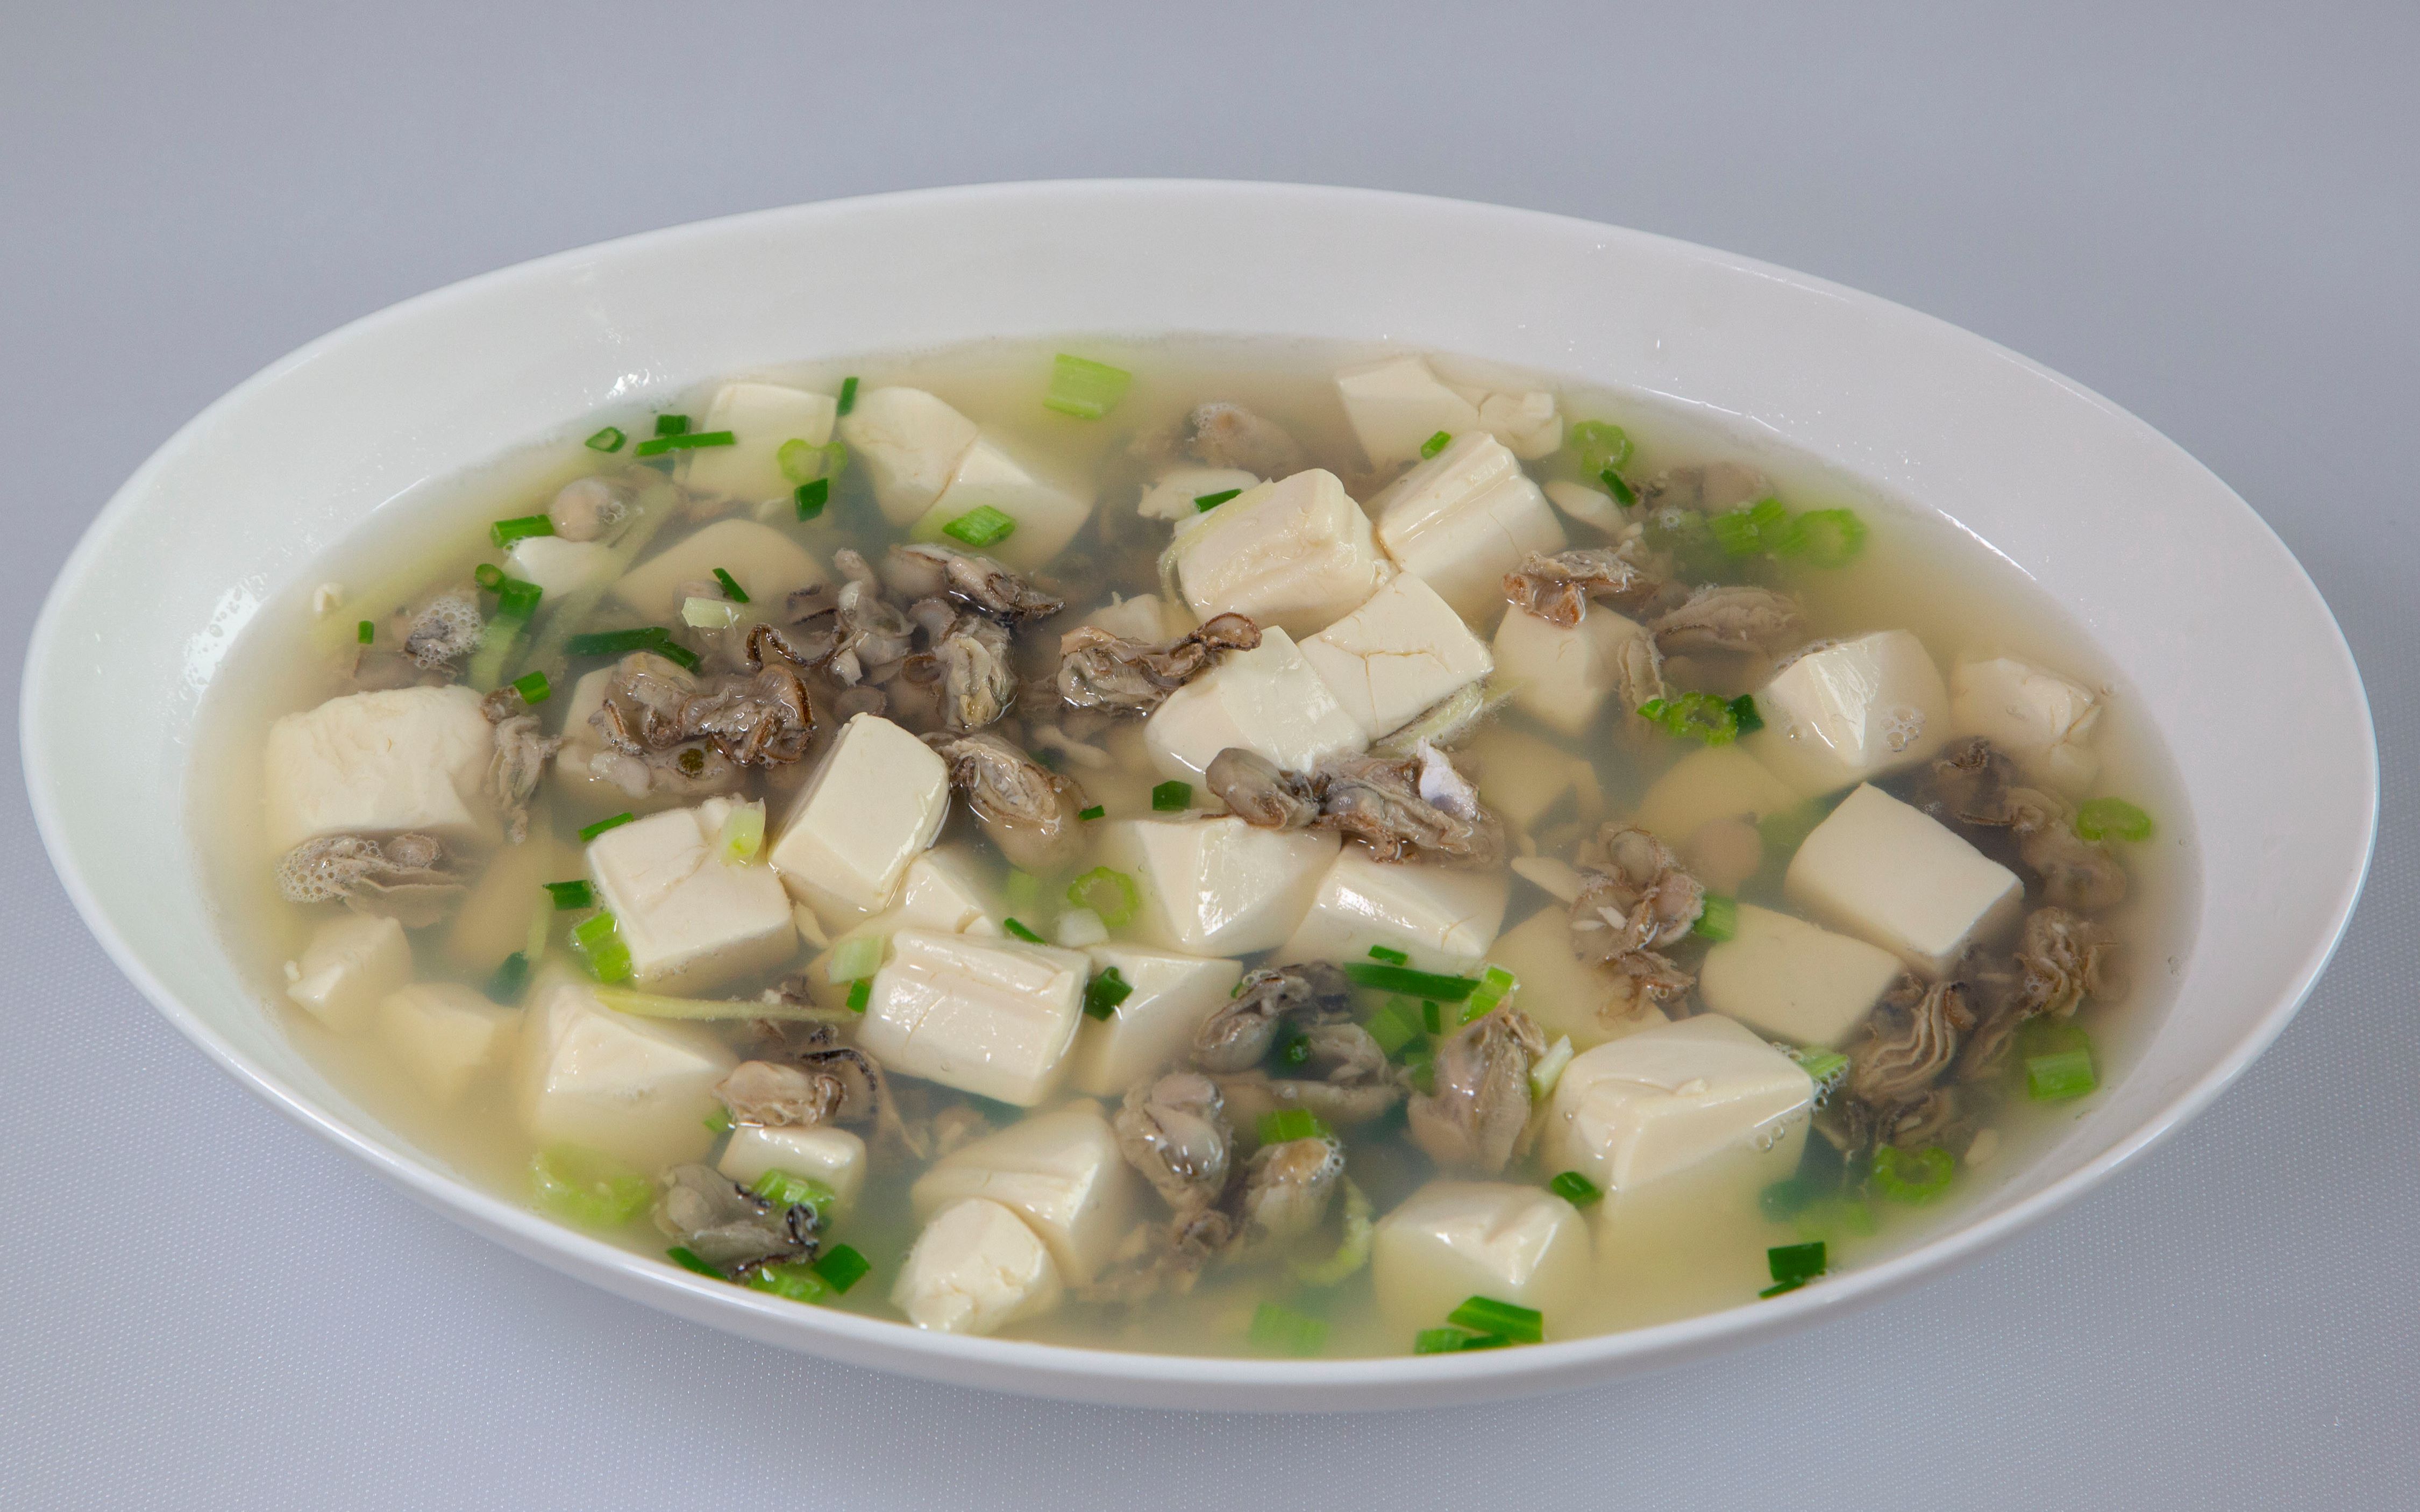 海蛎豆腐汤一道非常简单的海虾汤老人和小孩最喜欢